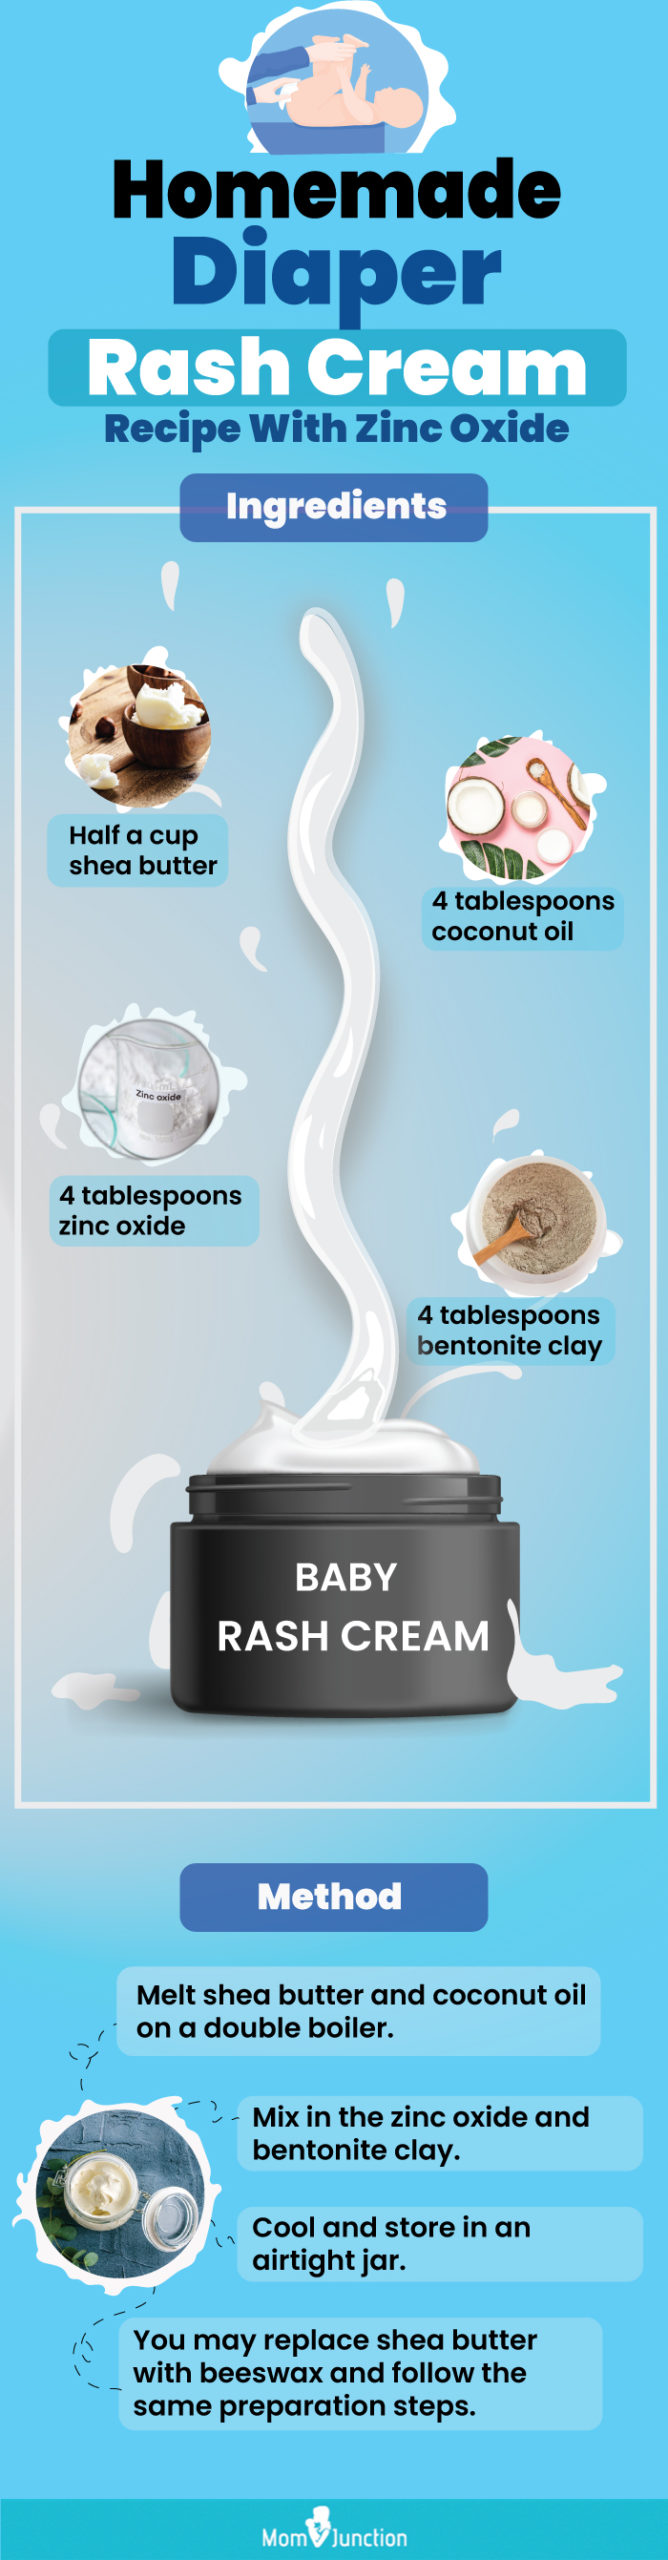 homemade diaper rash cream recipe with zinc oxide (infographic)